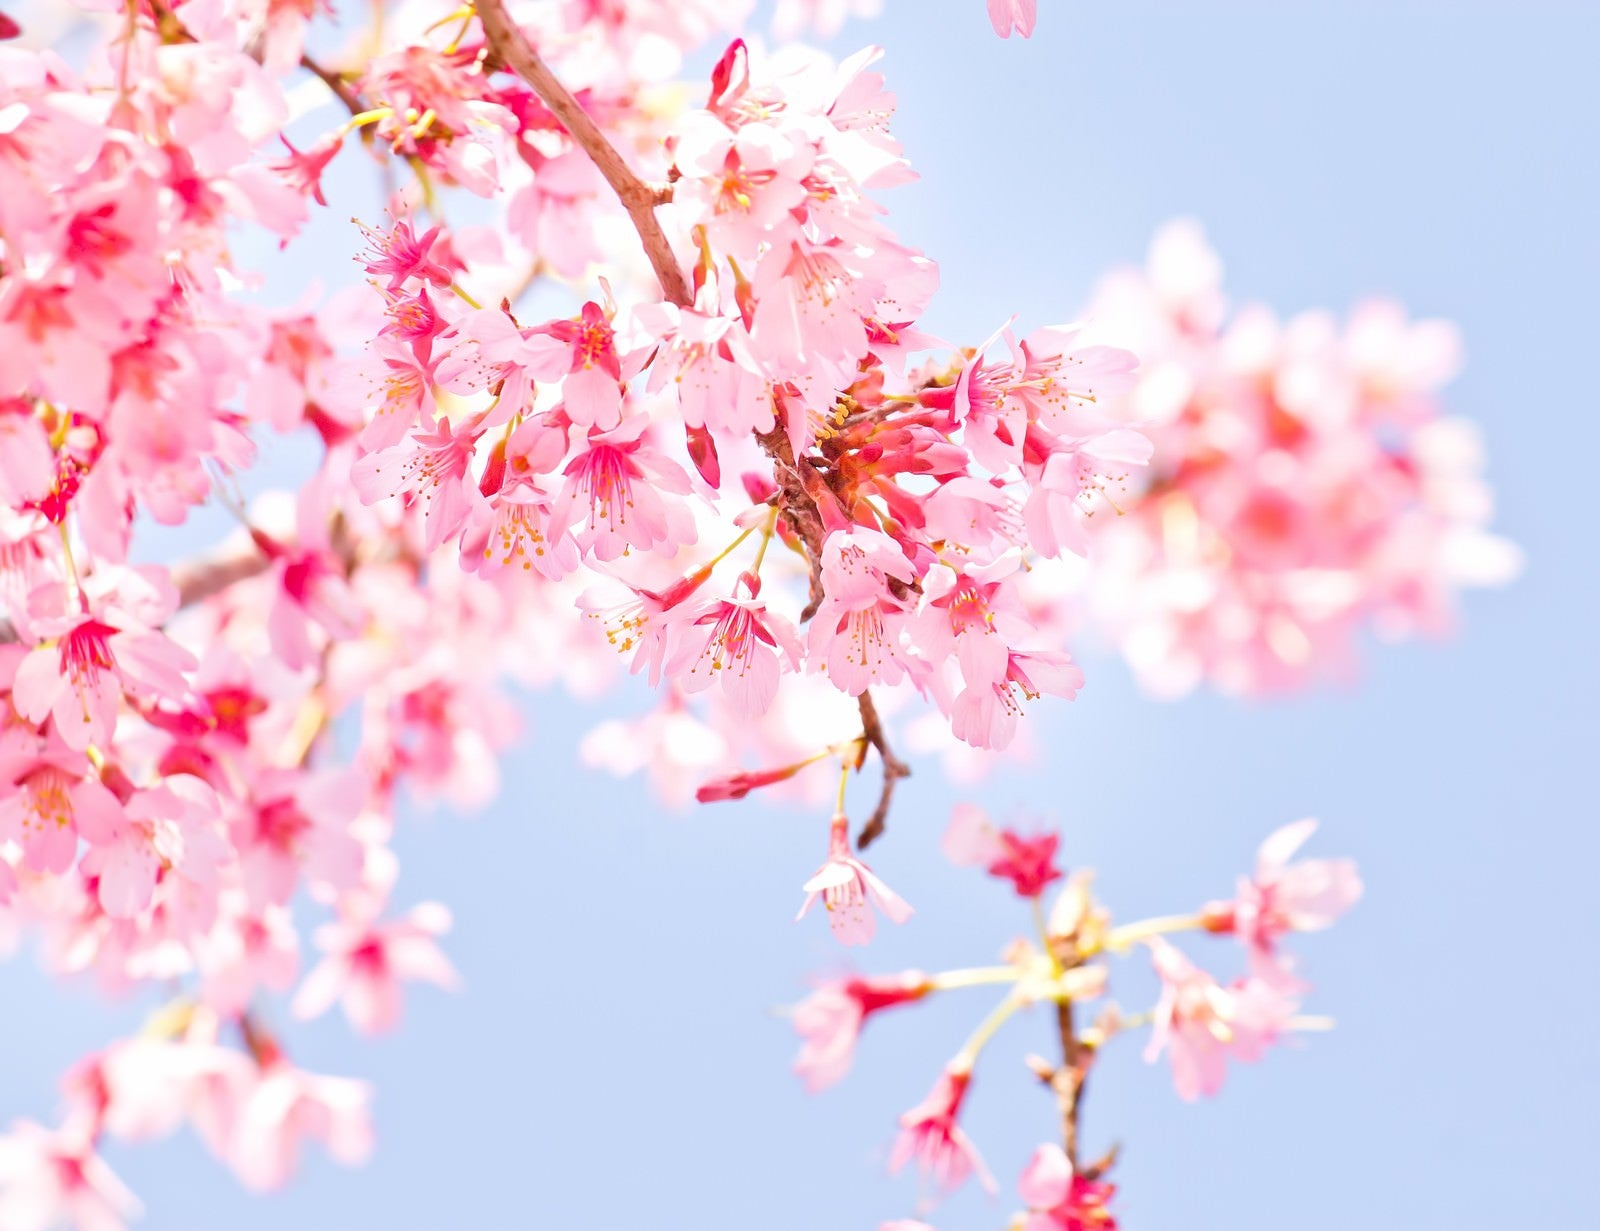 「小春日和の桜」の写真